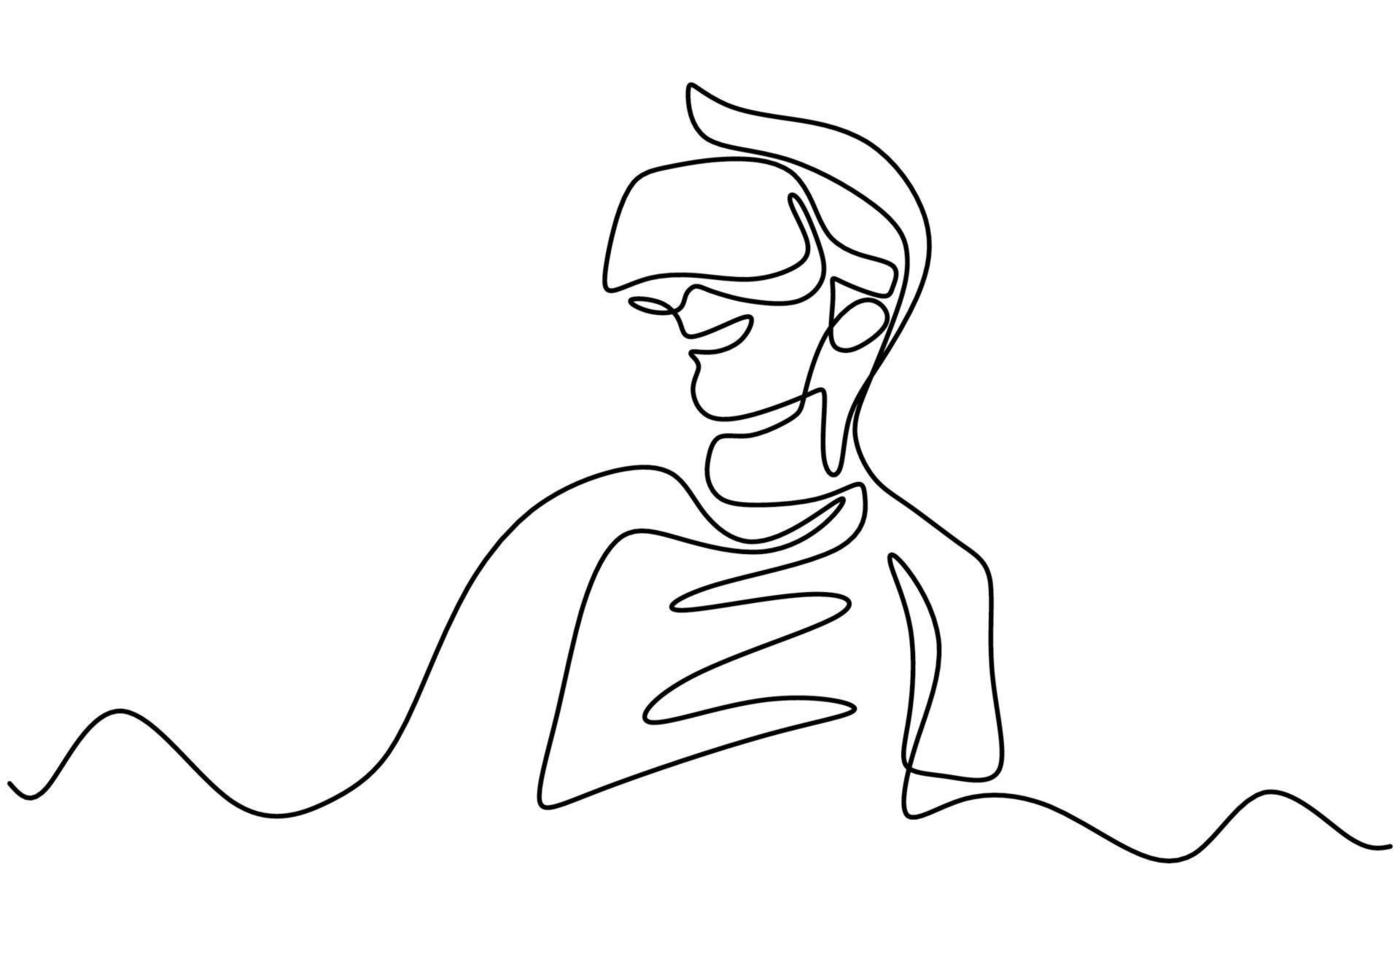 giovane uomo che indossa occhiali vr un disegno a tratteggio continuo. un giovane utilizza occhiali realtà virtuale del dispositivo quando gioca a casa stile minimalismo arte linea disegnata a mano. illustrazione vettoriale